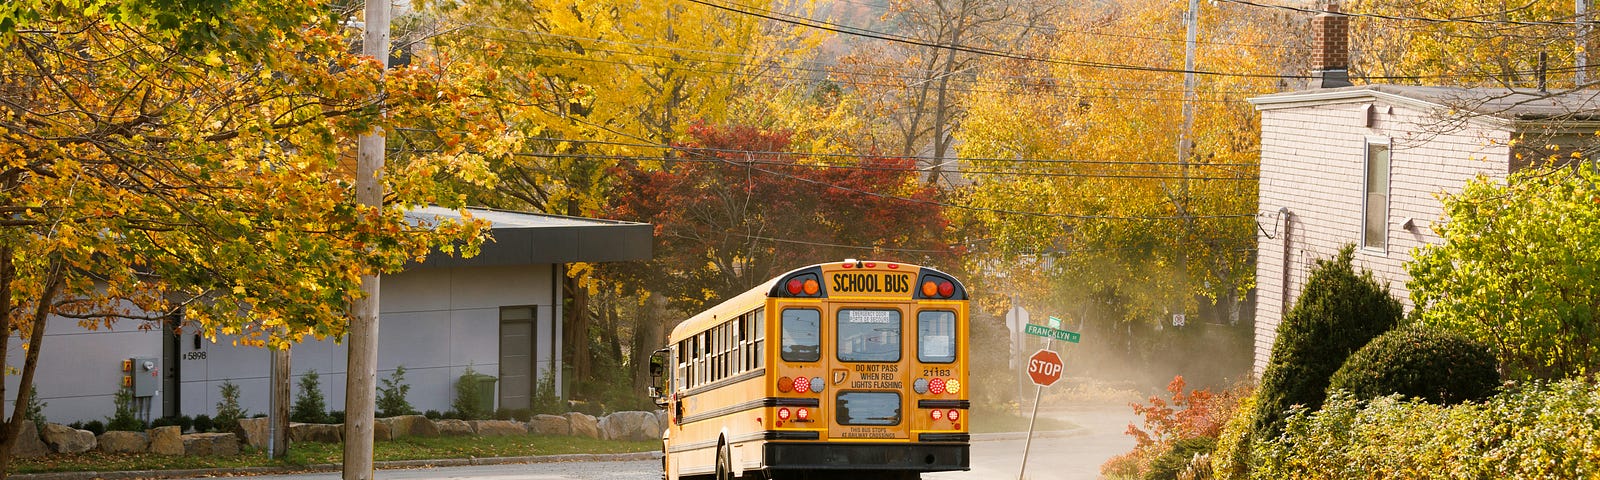 A school bus drives down a street.